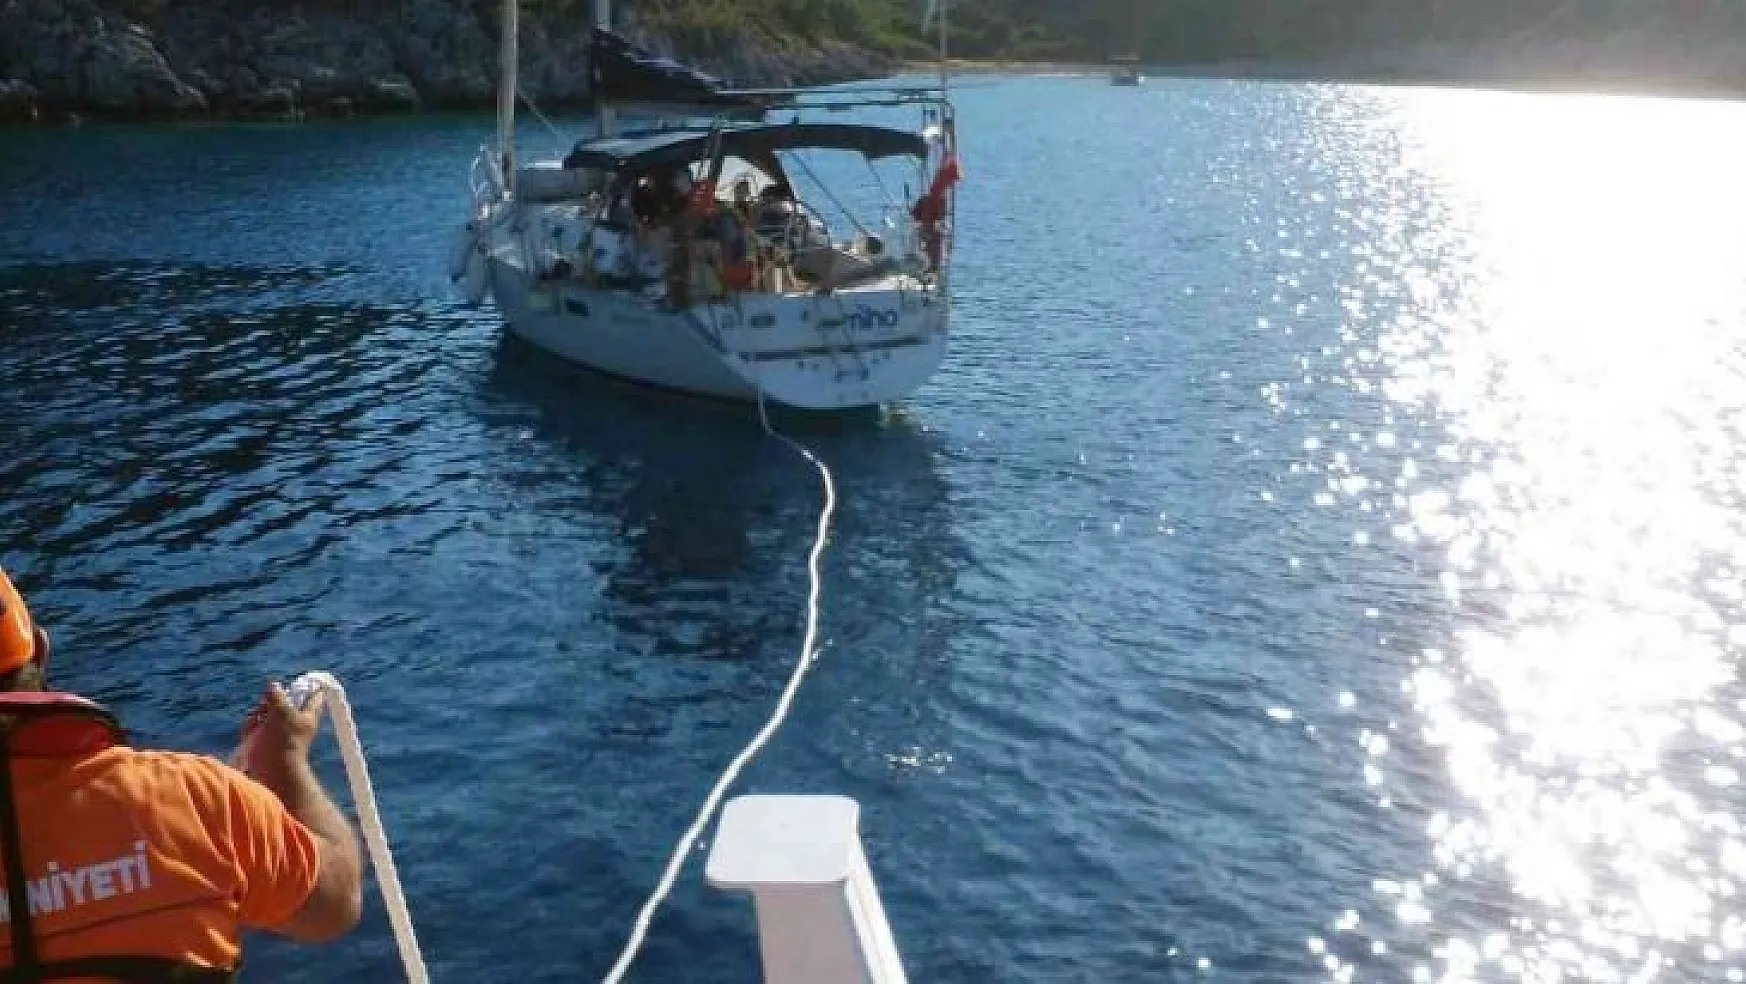 Makine arızası yapan tekne Marinaya çekildi